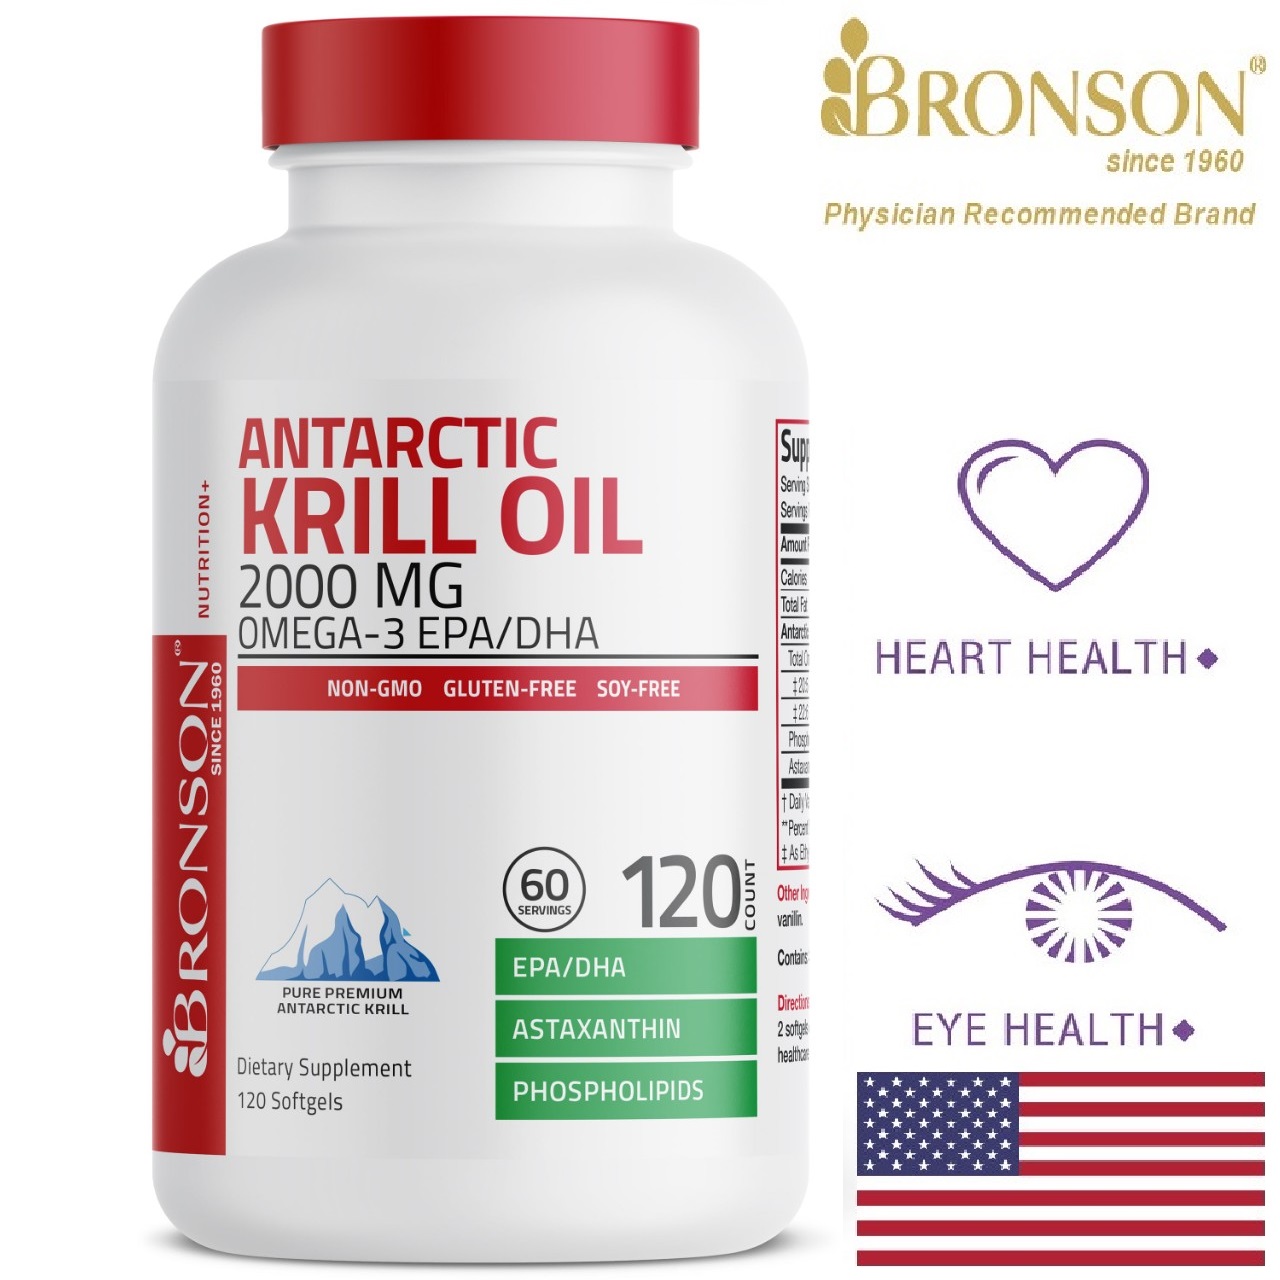 Organic Krill Oil Omega 3 EPA DHA - 2000mg - 120 viên Mỹ - Bổ mắt, tim mạch